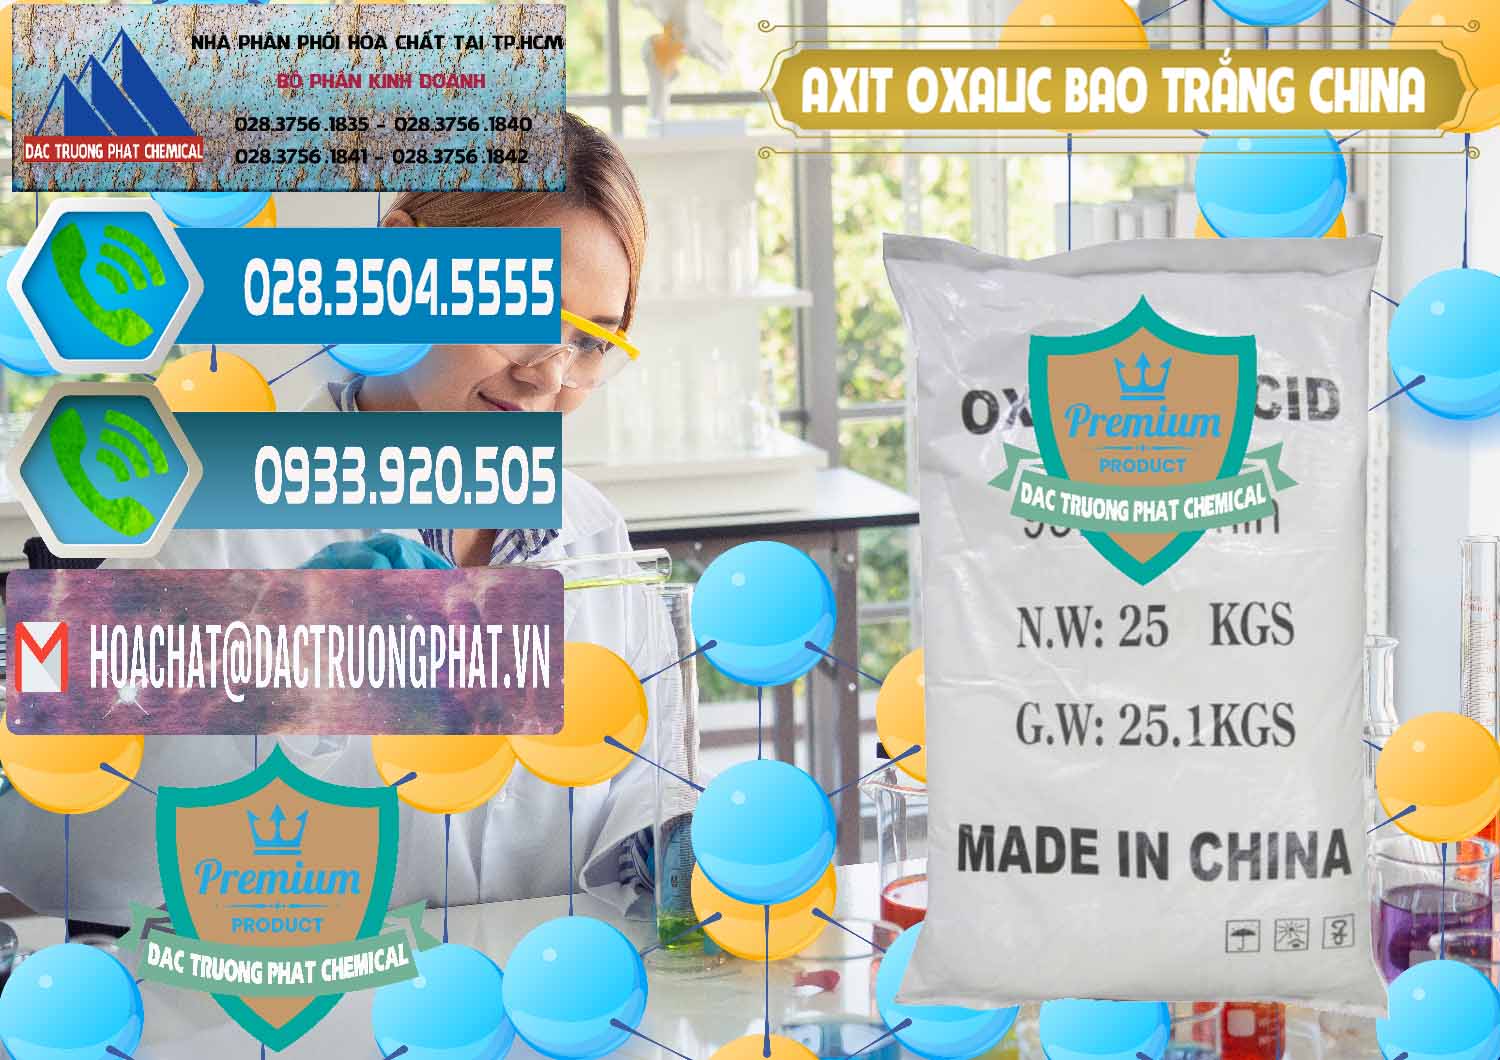 Chuyên kinh doanh _ bán Acid Oxalic – Axit Oxalic 99.6% Bao Trắng Trung Quốc China - 0270 - Phân phối _ kinh doanh hóa chất tại TP.HCM - congtyhoachat.net